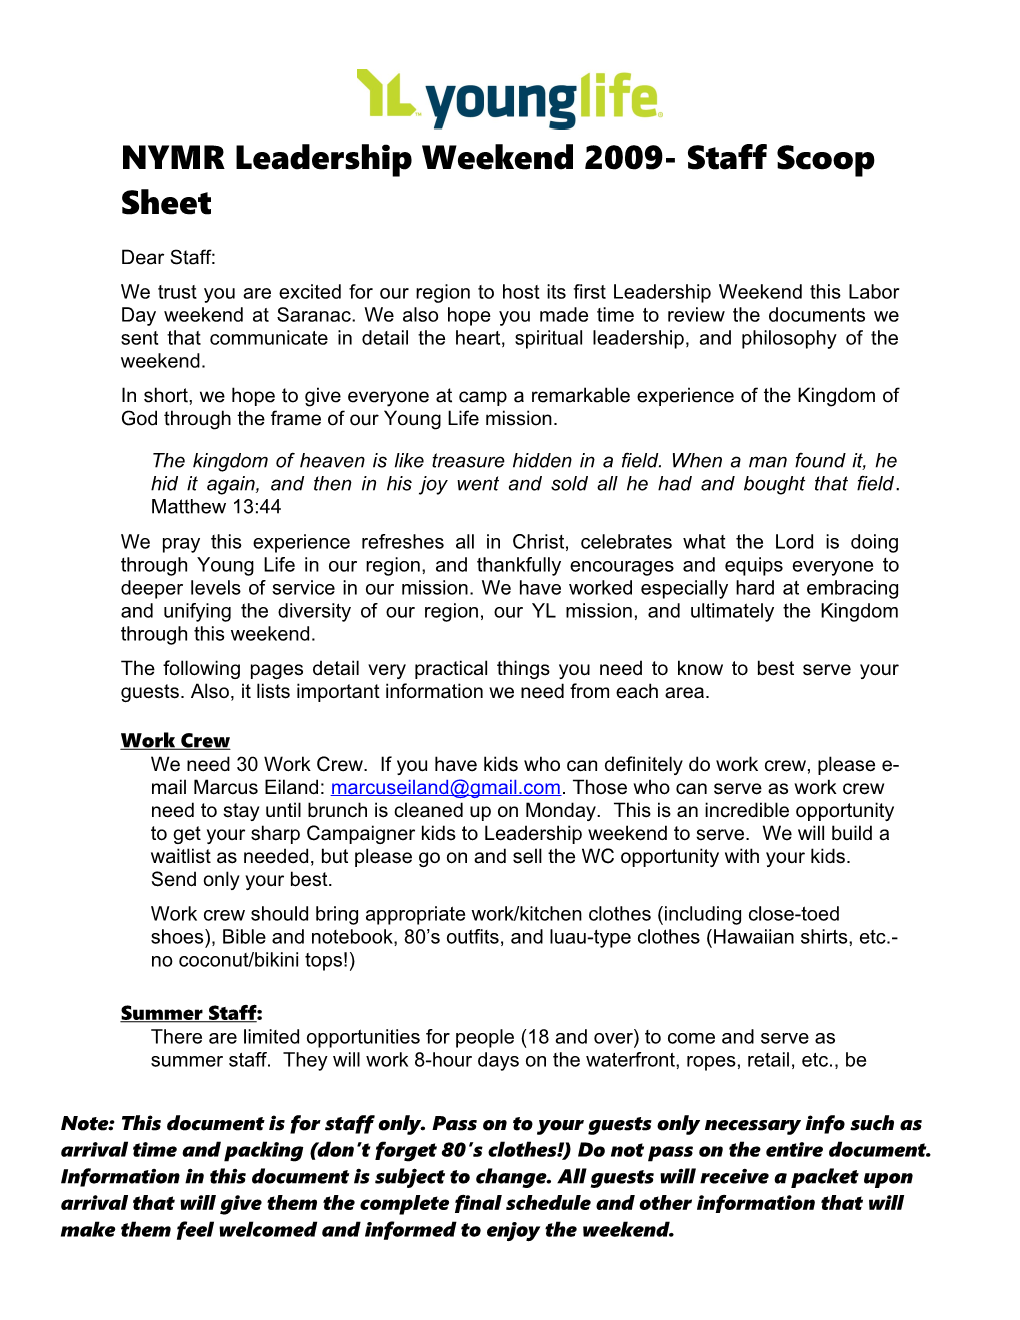 NYMR Leadership Weekend 2009- Staff Scoop Sheet